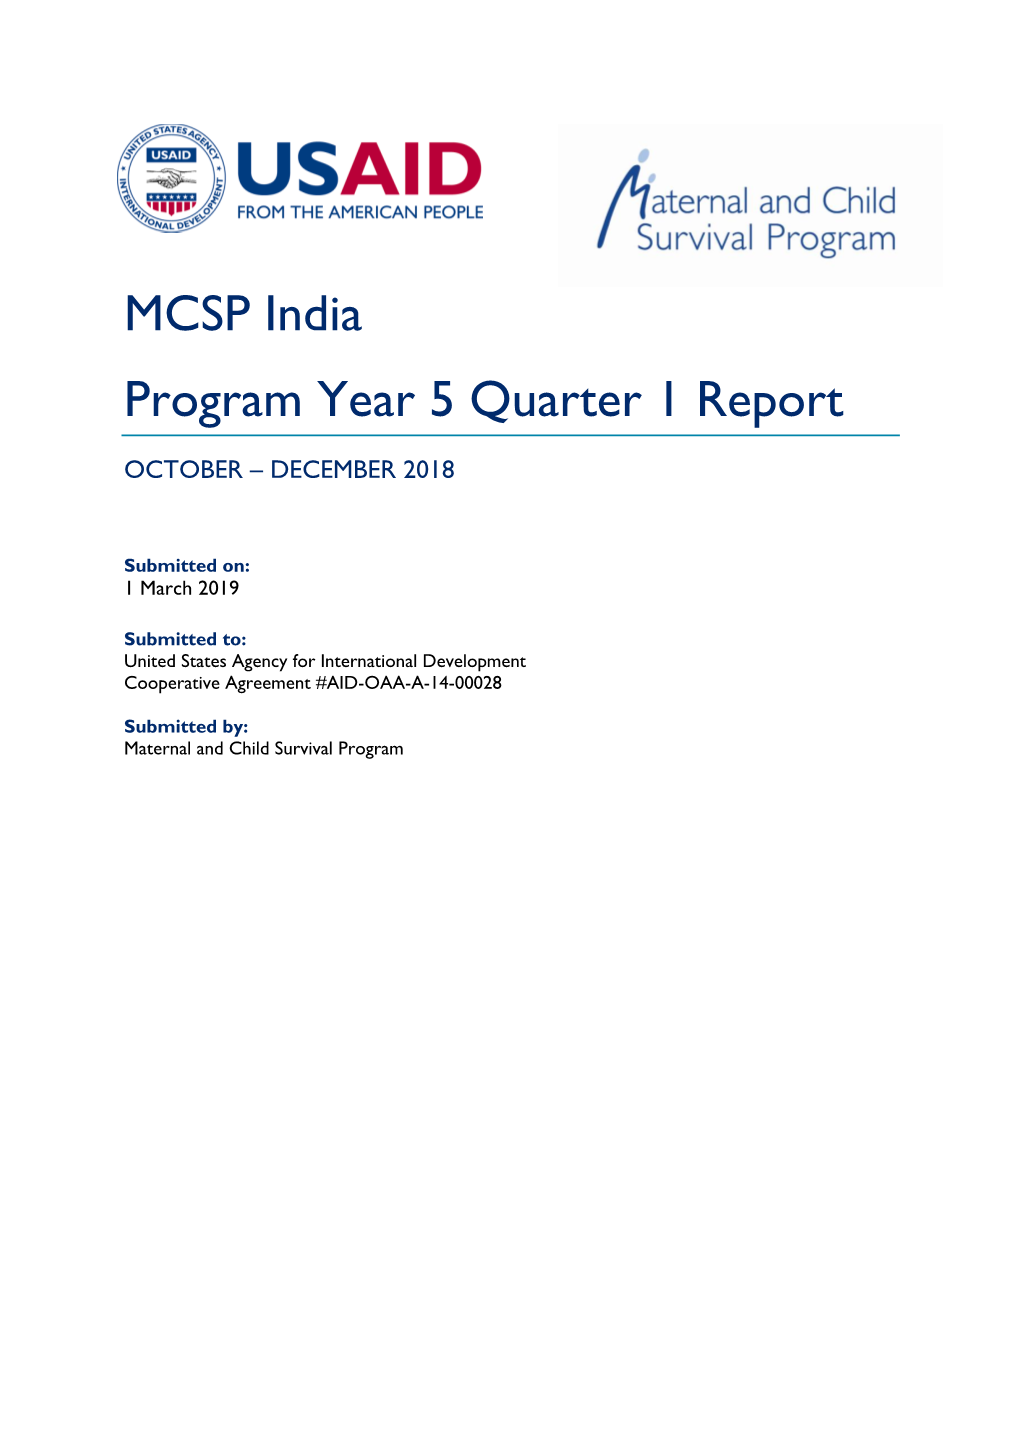 MCSP India Program Year 5 Quarter 1 Report